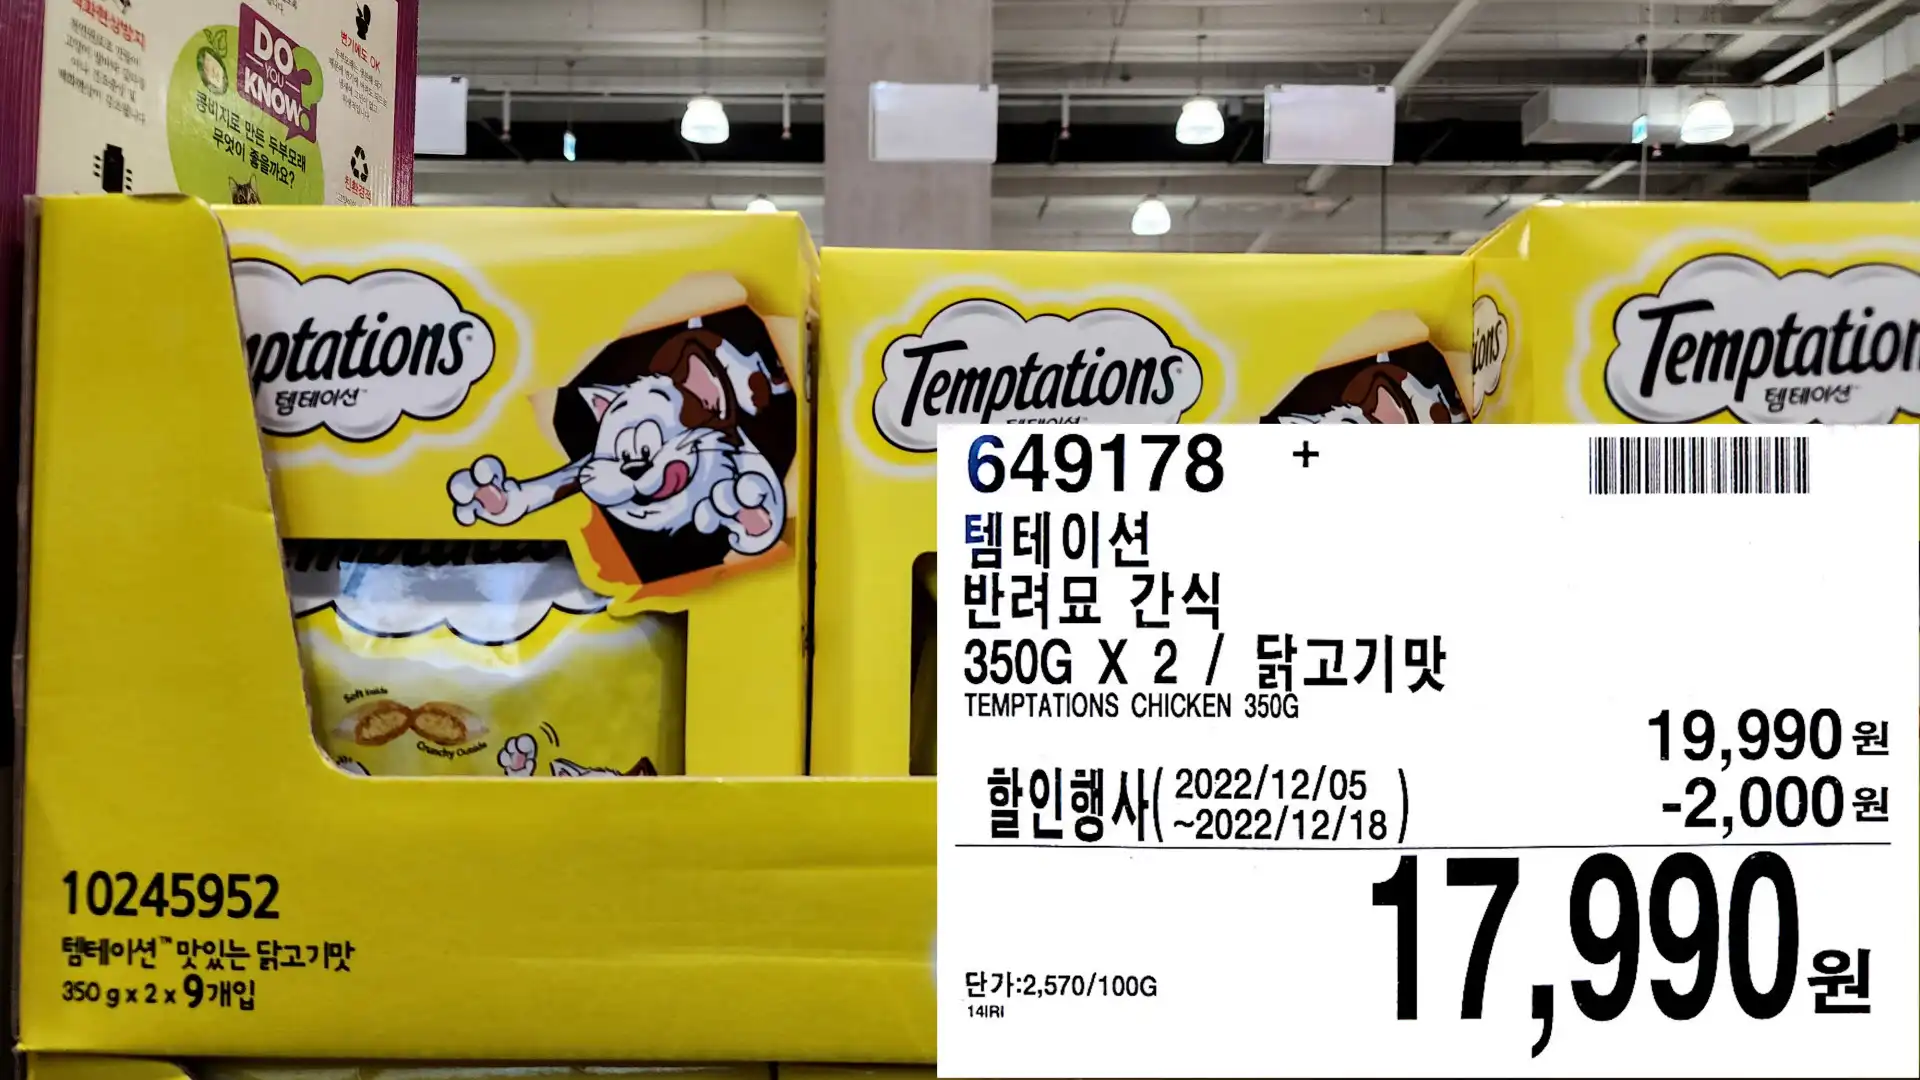 템테이션
반려묘 간식
350G
X 2 / 닭고기맛
TEMPTATIONS CHICKEN 350G
17&#44;990원